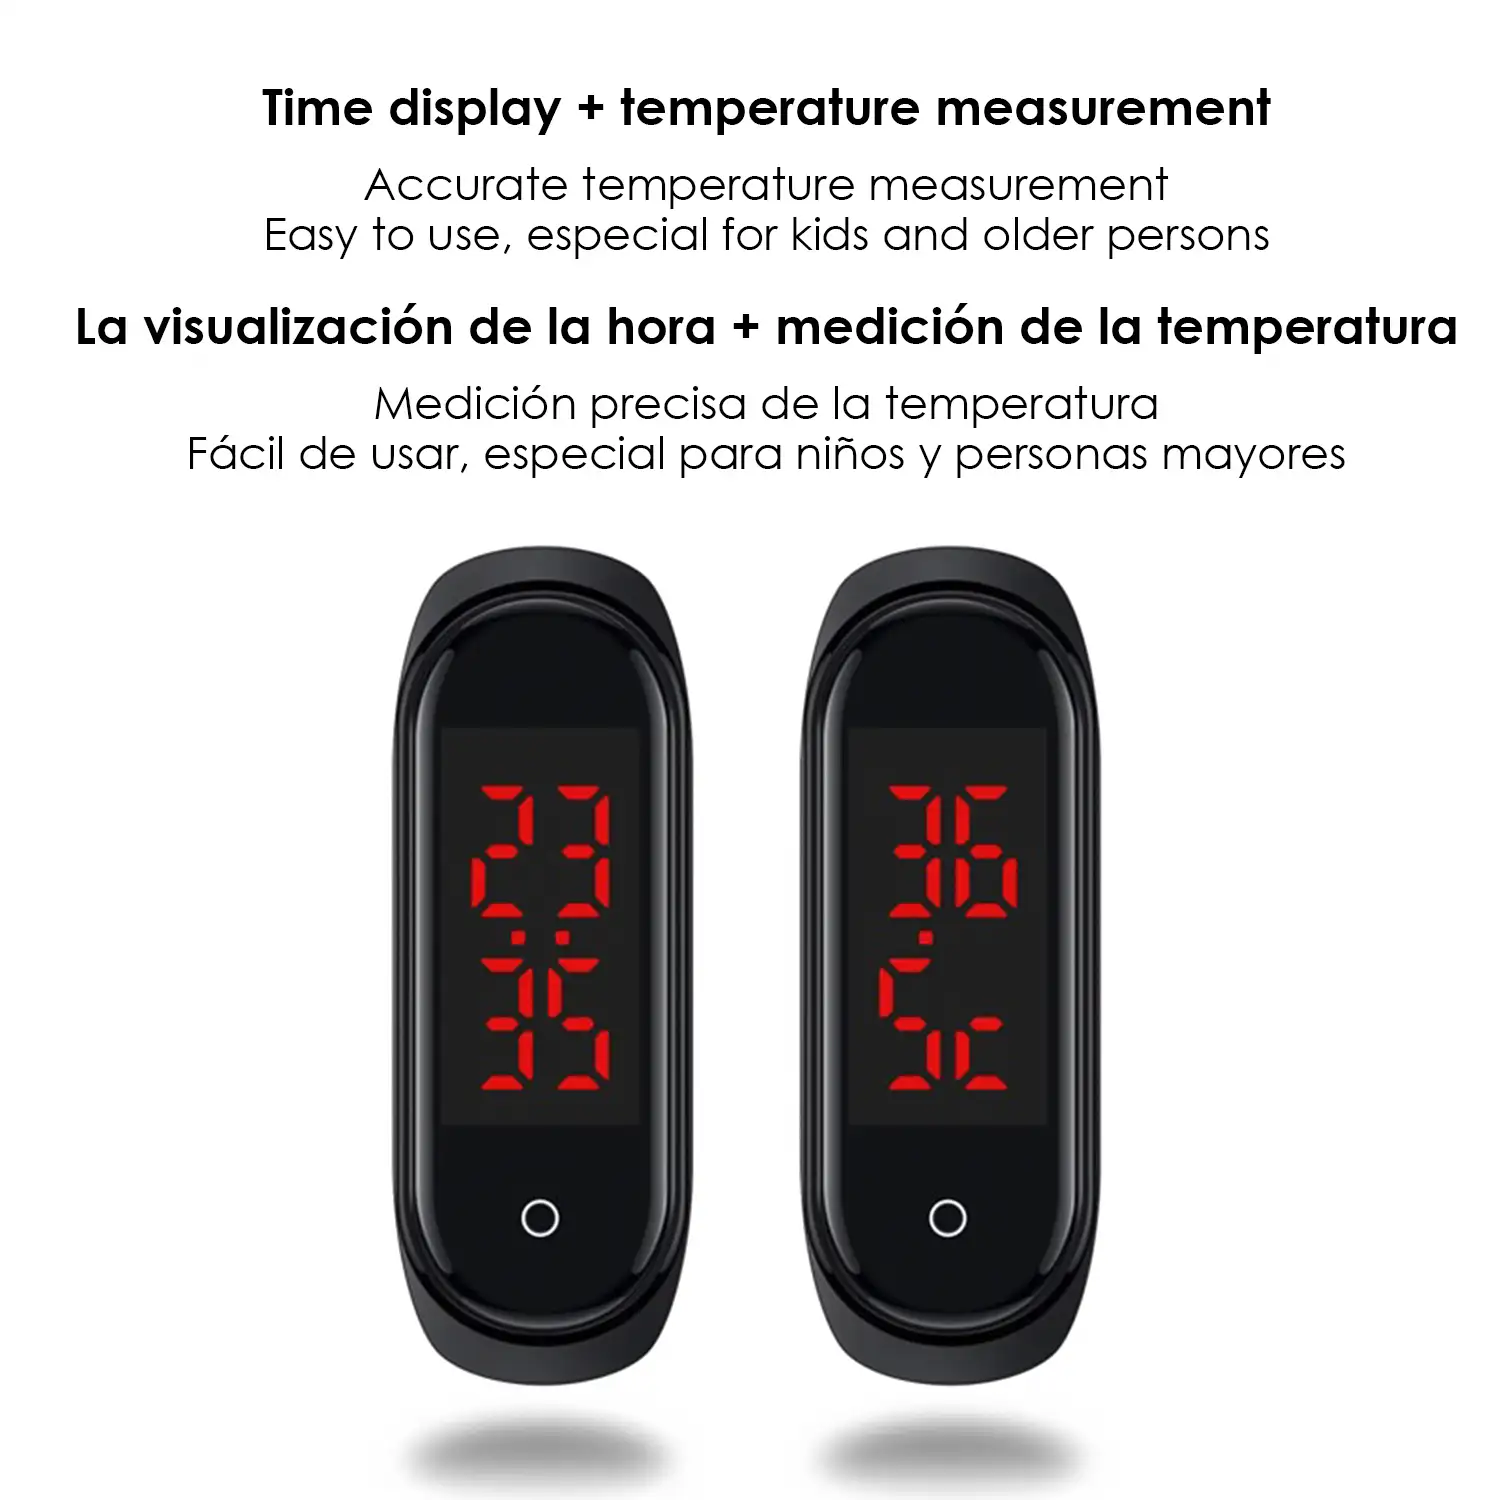 Brazalete M8 con reloj y termómetro de medición de temperatura corporal